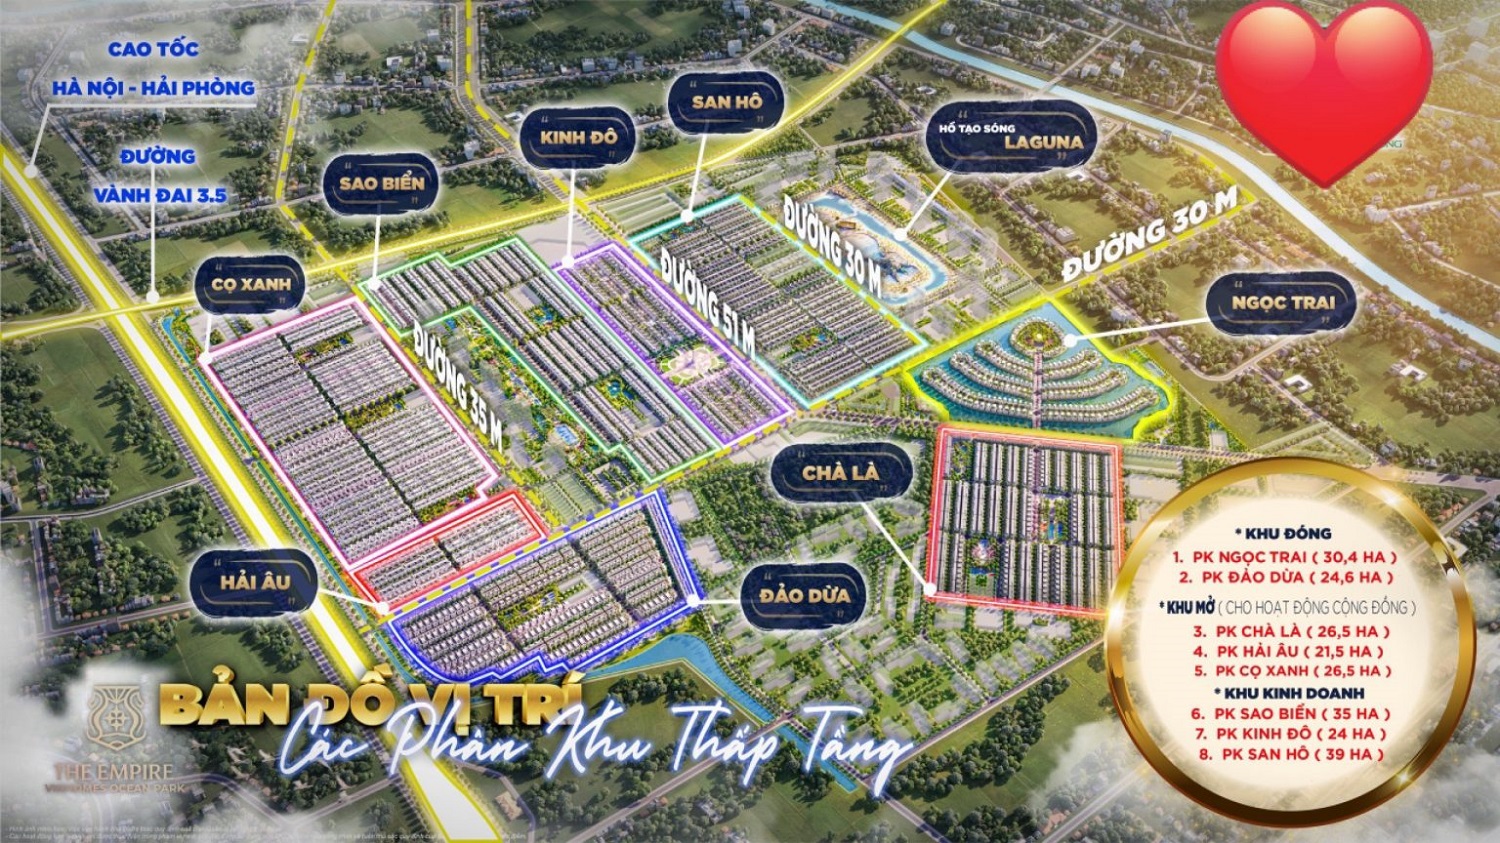 Tổng quan đại dự án Vinhomes The Empire Văn Giang Hưng Yên bao gồm 8 phân khu